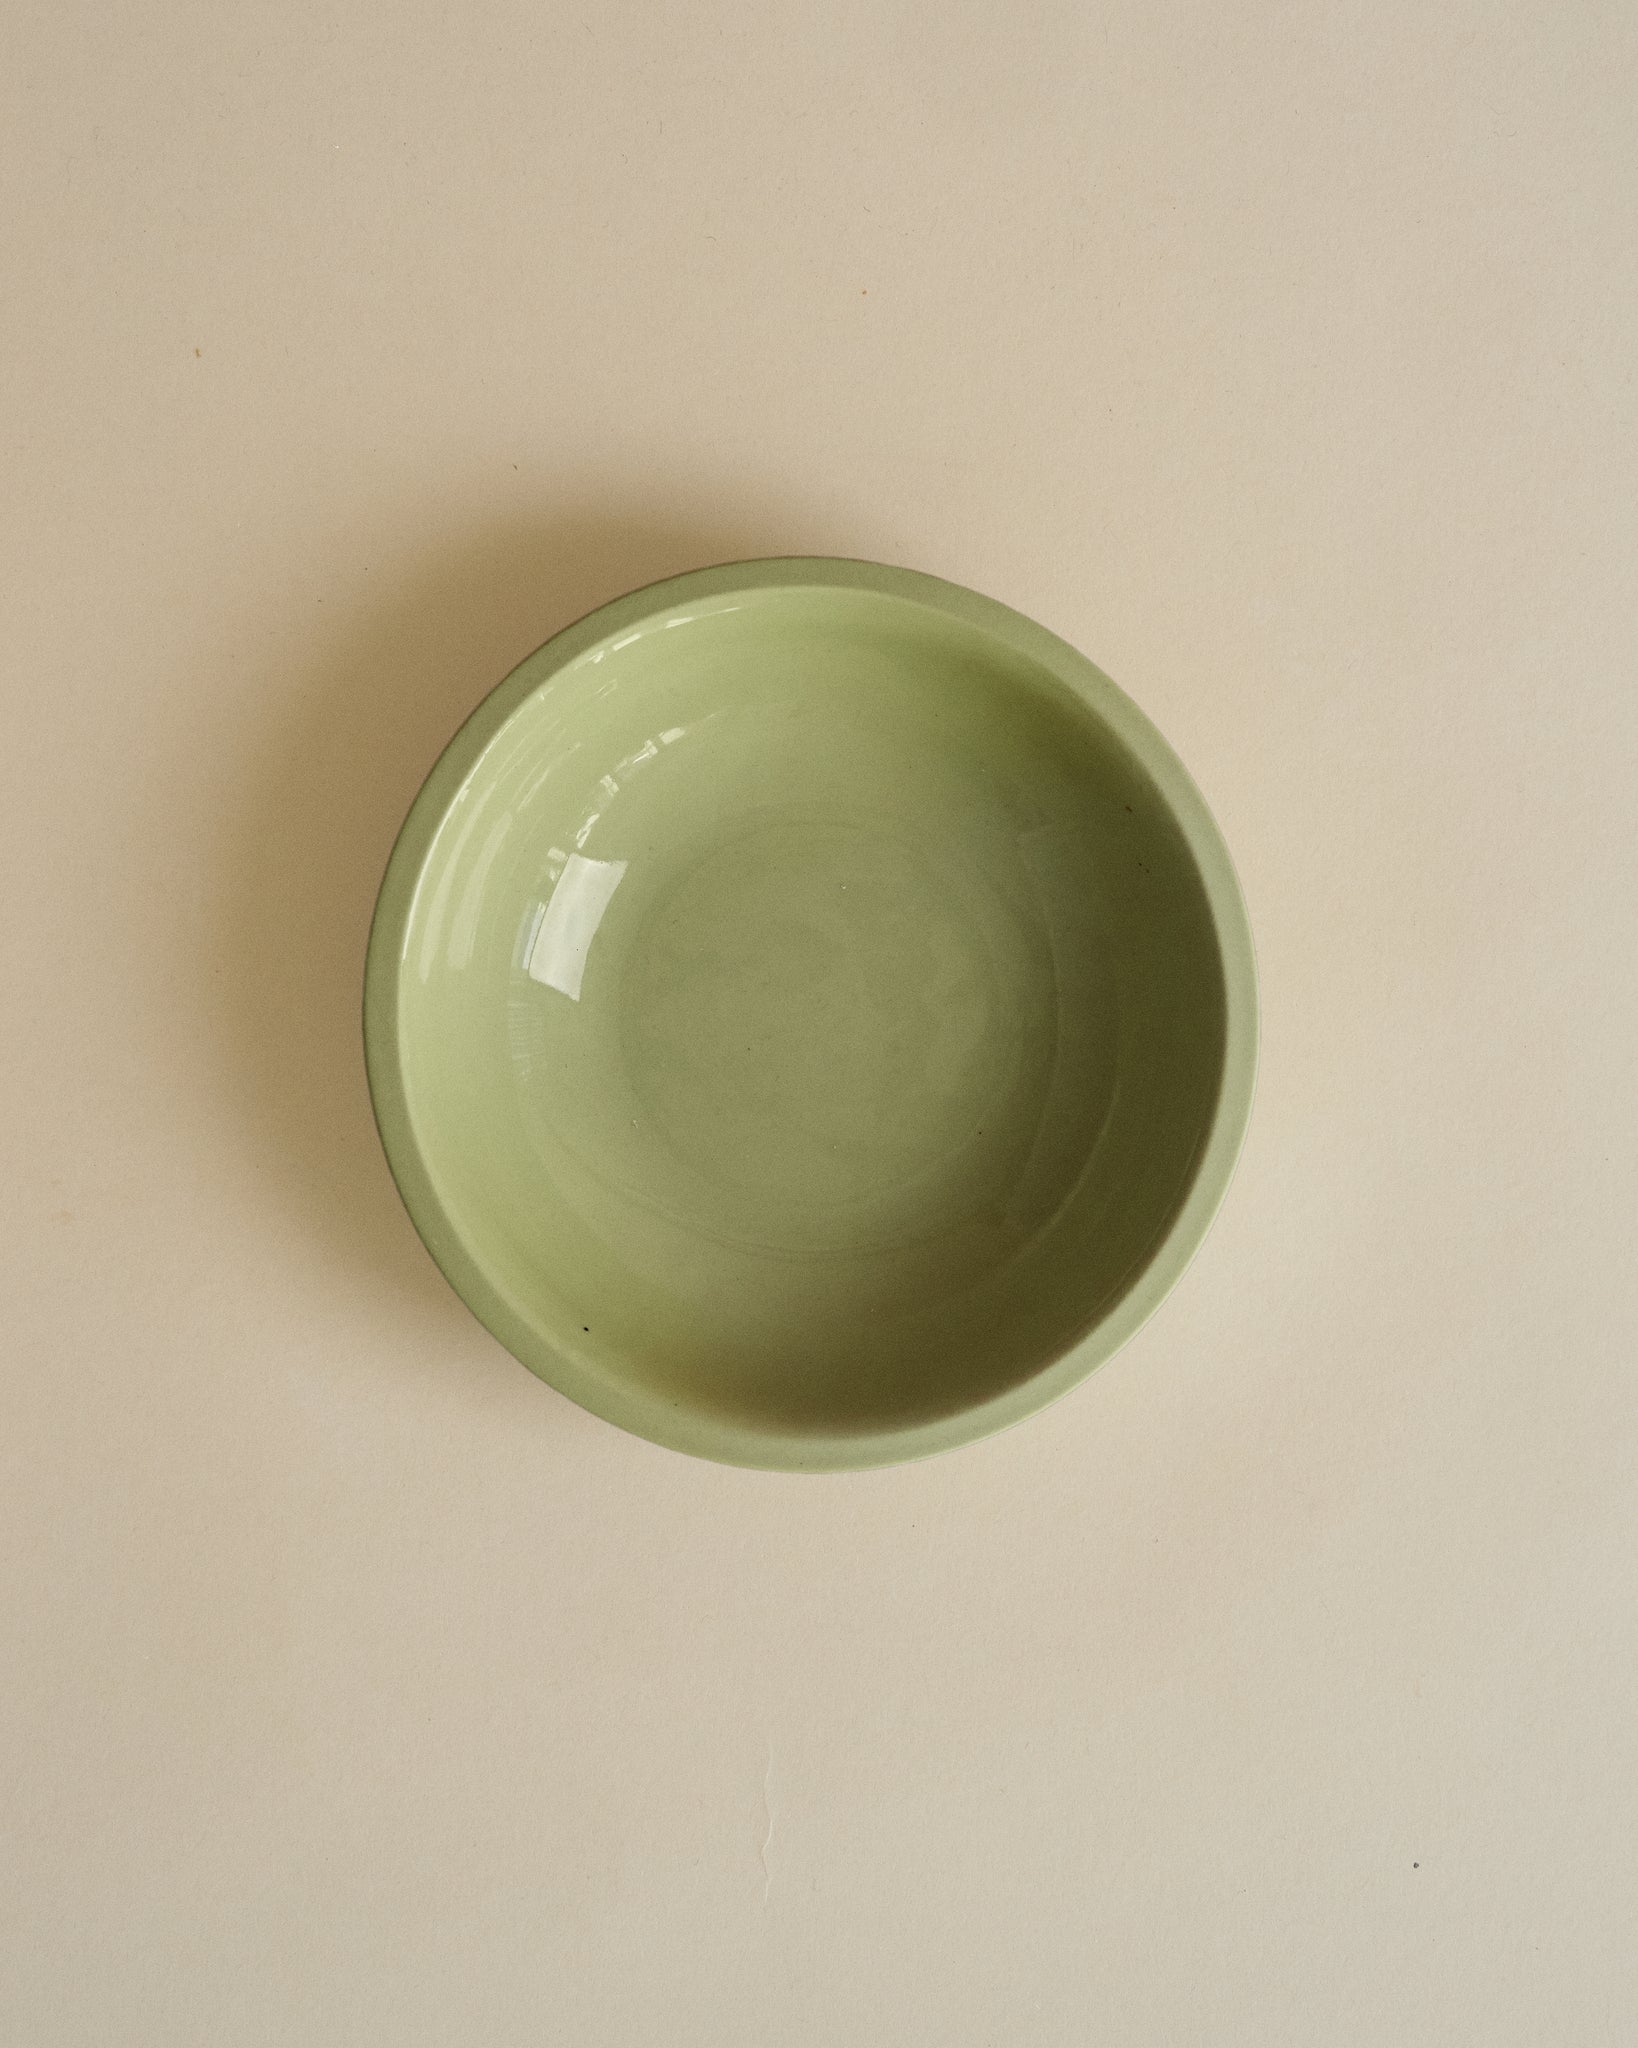 Medium Rim Bowl - Wakame